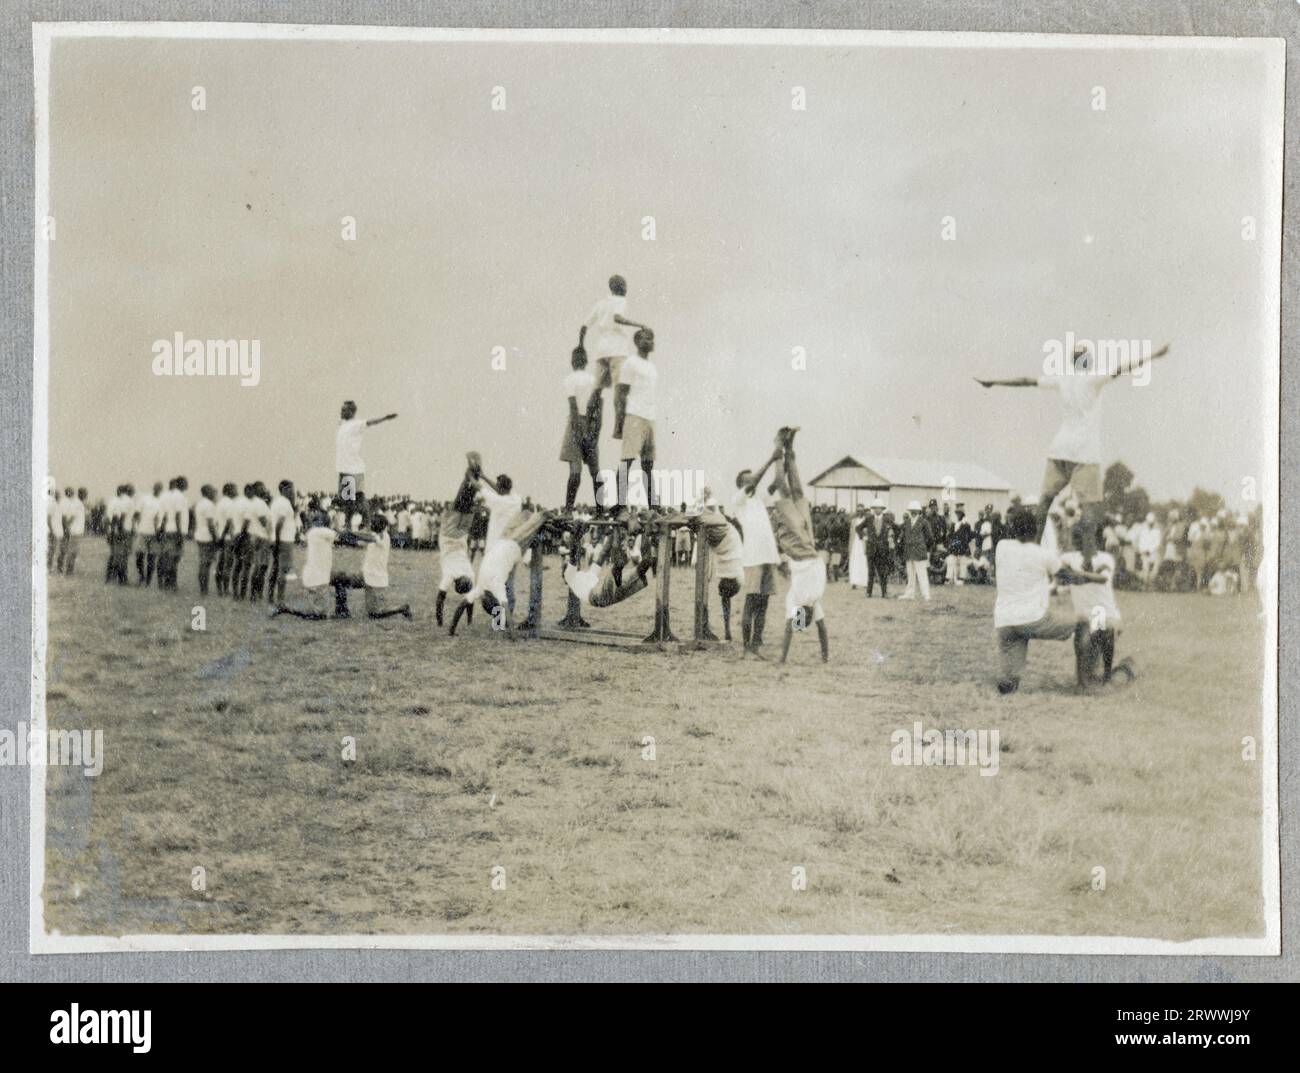 Dieses Bild zeigt zwei Teams, die sich bei einem Schlepper gegeneinander ziehen. Eine multirassische Menschenmenge spektiert. Eine weitere Kopie beschreibt das Bild als Gefängniswärter vs. K.A.R. beim East African Police Sports, 25. August 1917. Stockfoto